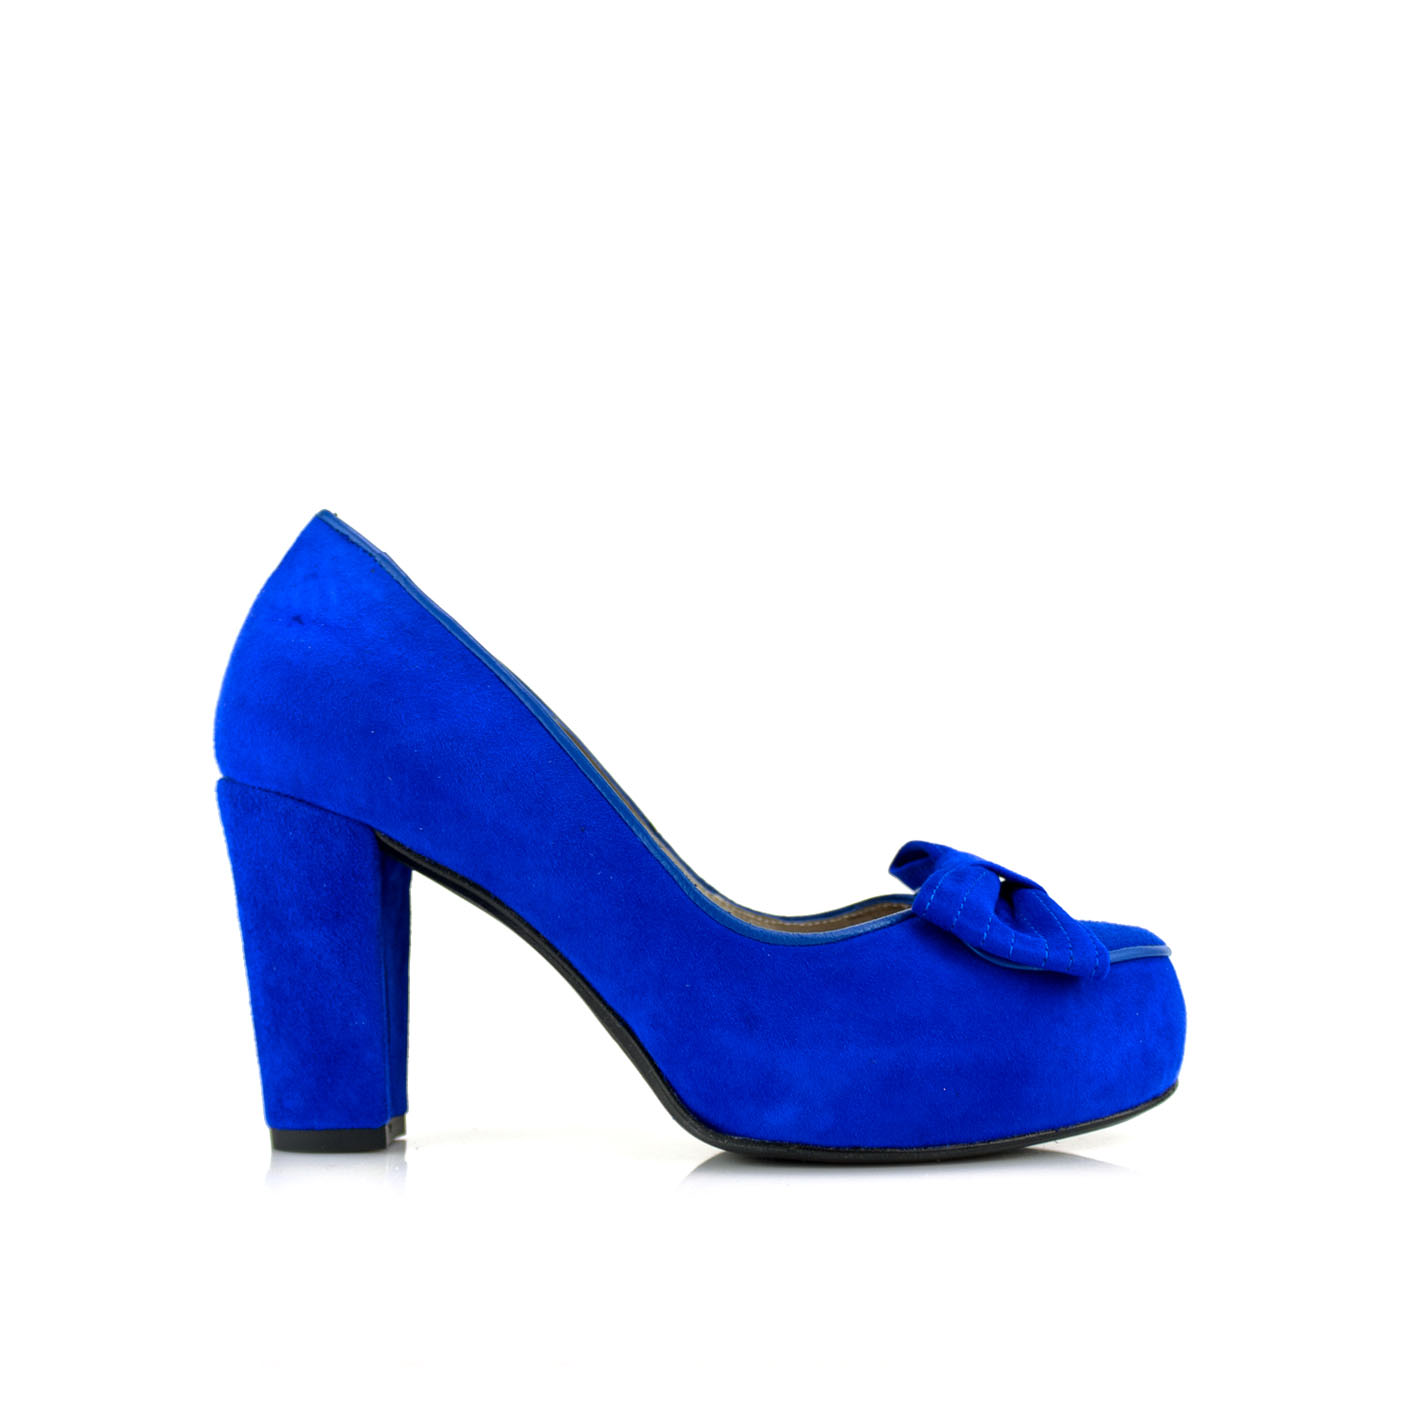 Zapatos salon de mujer lazo en azul y tacon de 8 cm